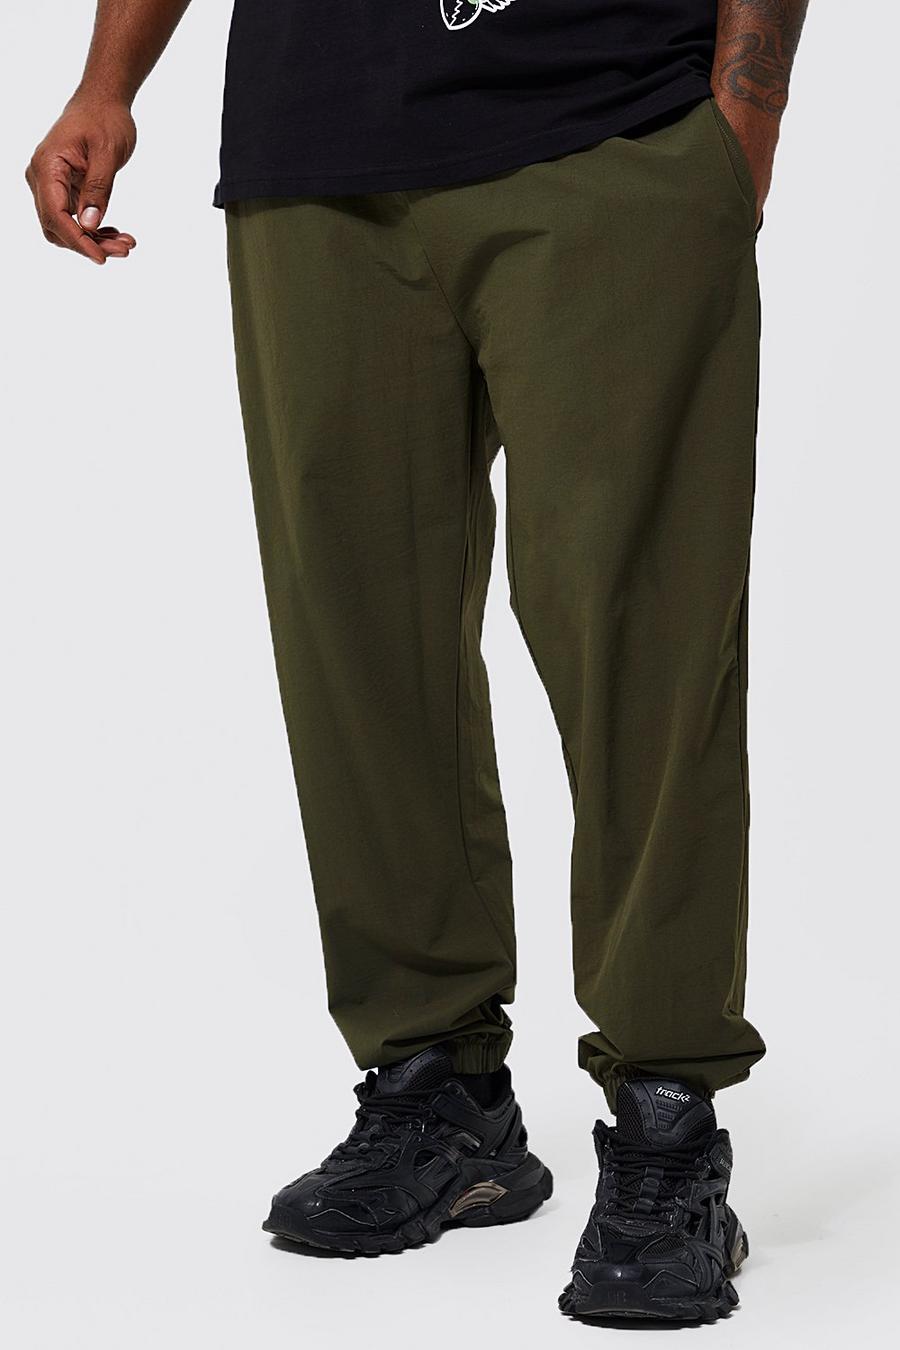 זית verde מכנסיים עם שריכת פטנט בחפתים בגזרה צרה מידות גדולות